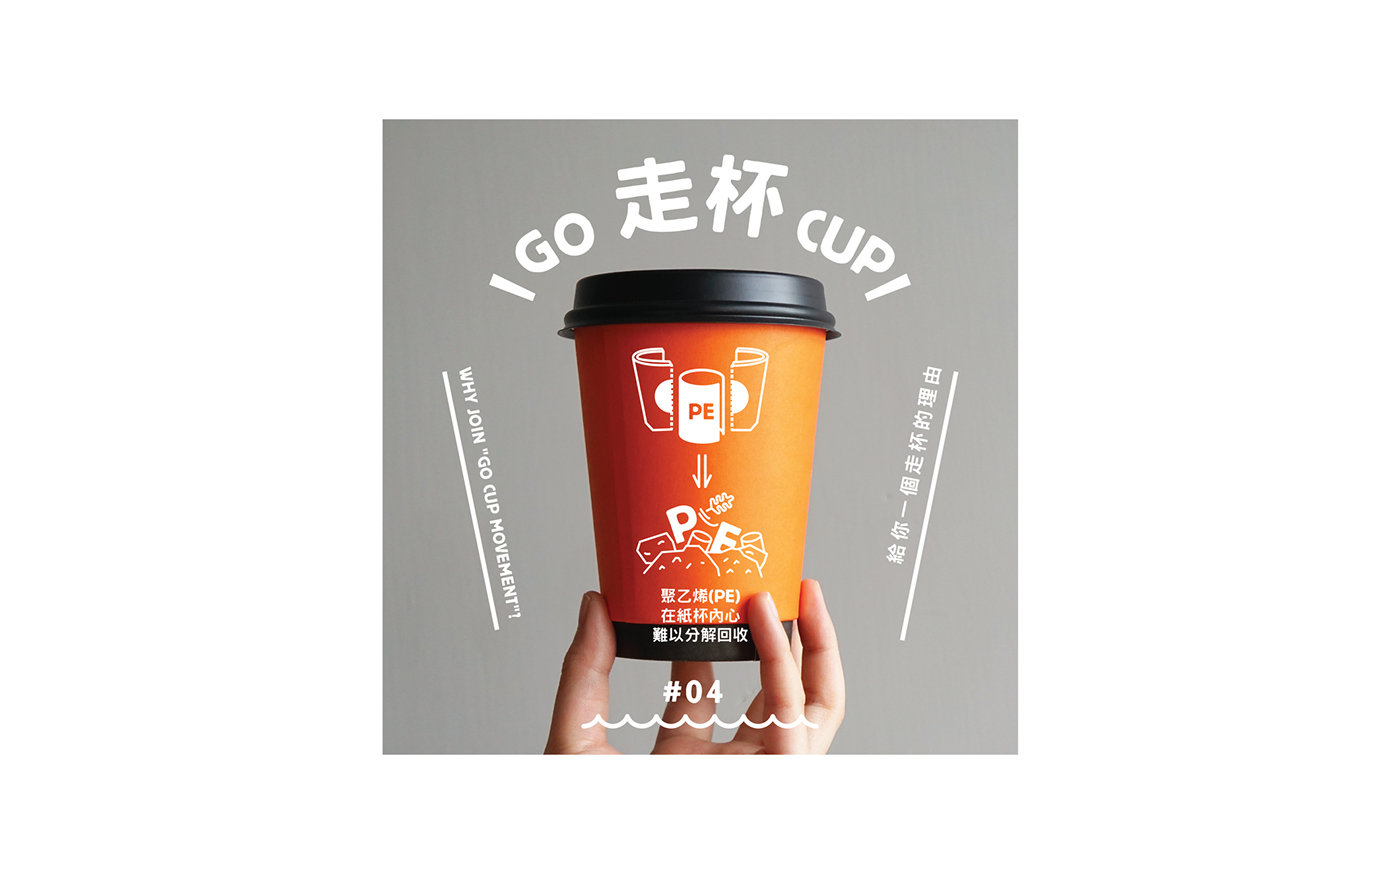 environmental protection cup cute Character green Exhibition  visual identity graphic Hong Kong NGO